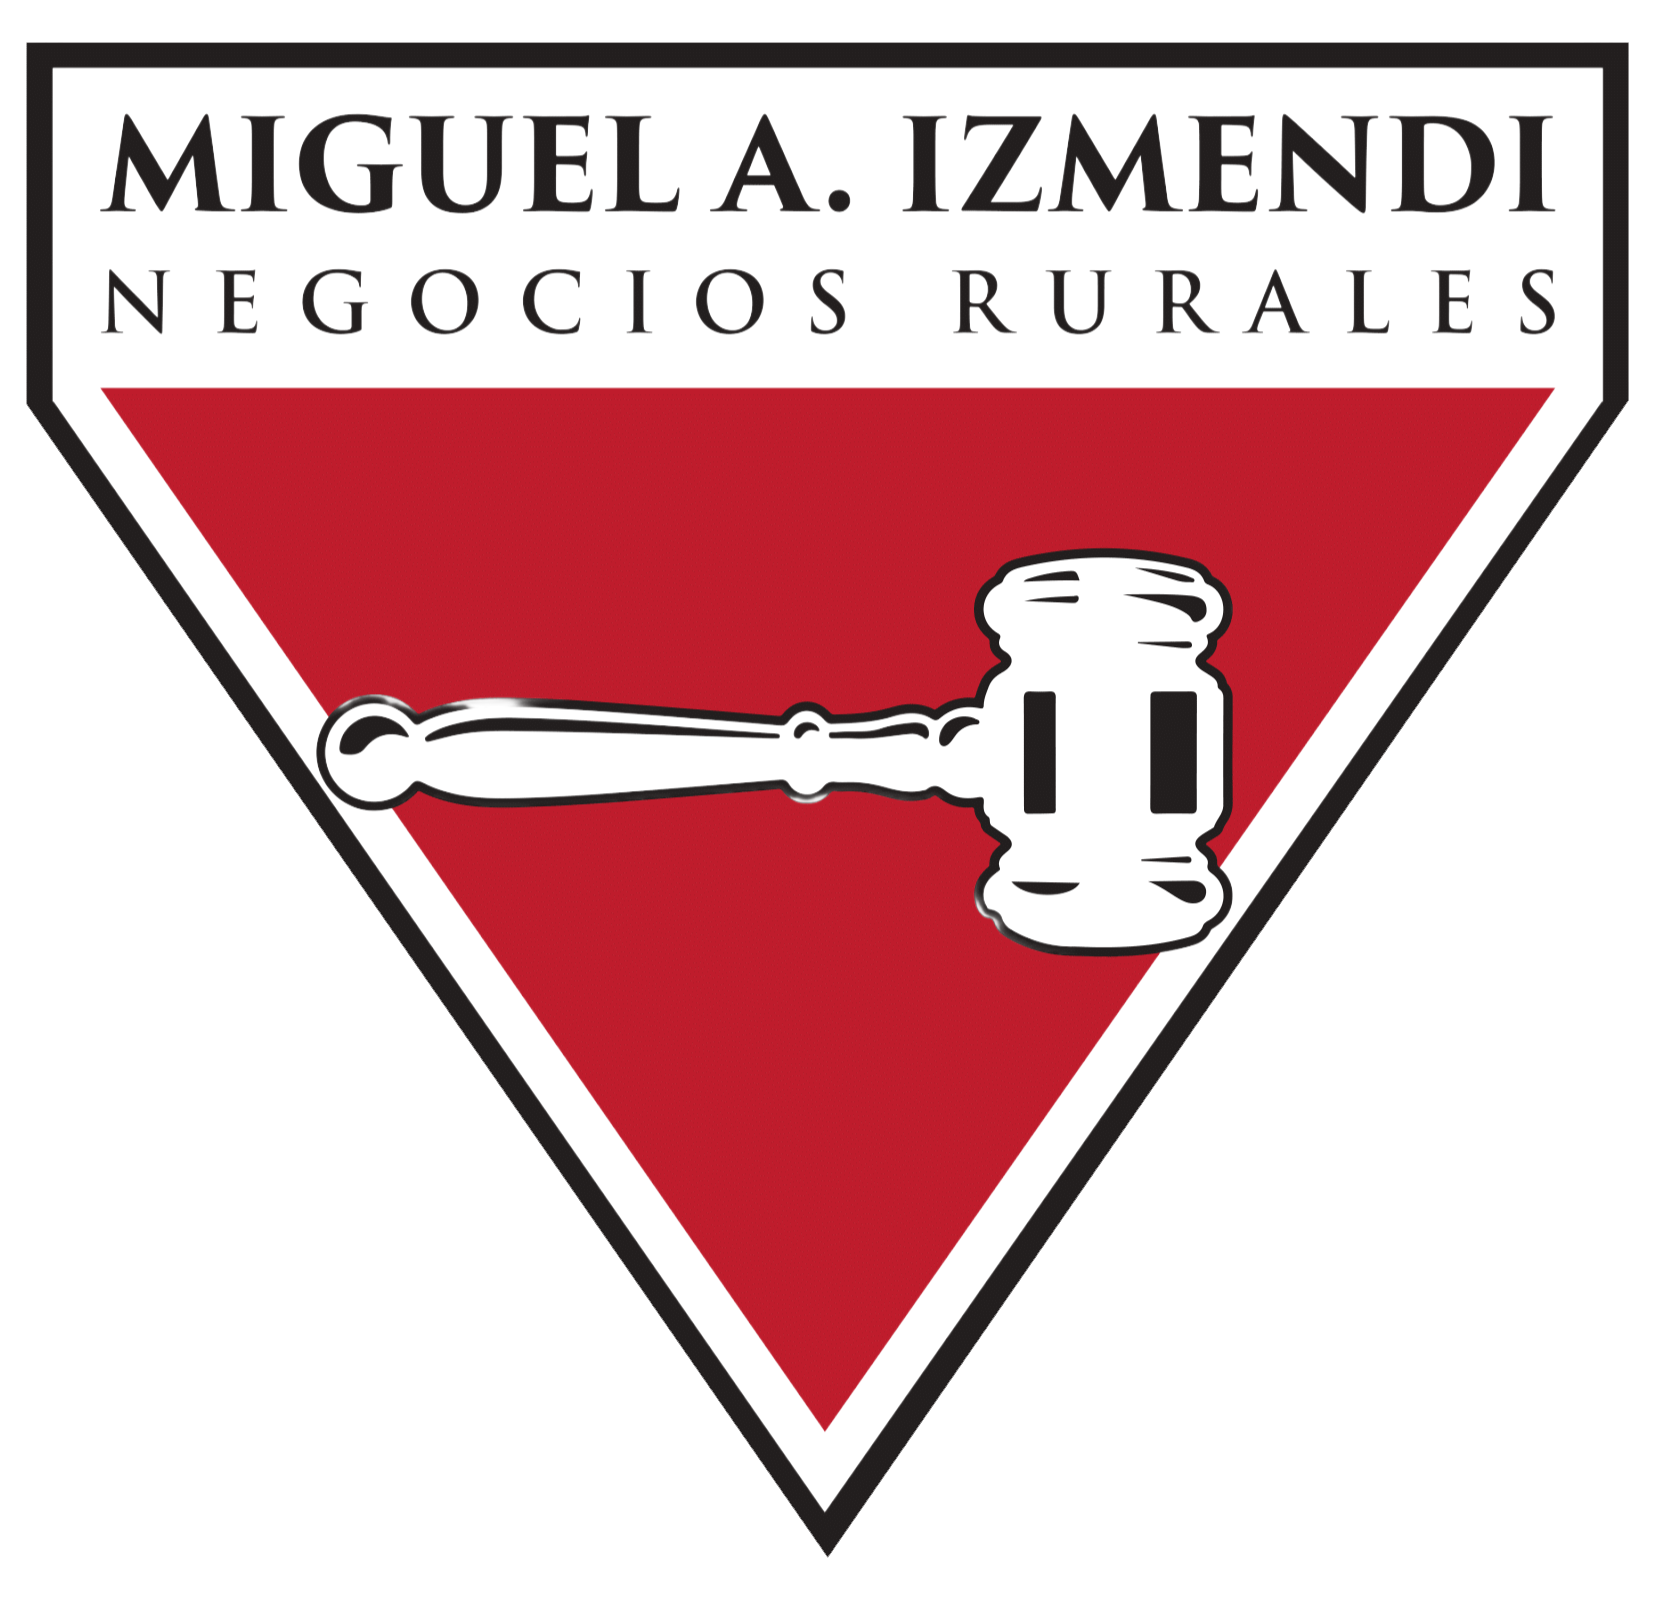 Miguel A. Izmendi